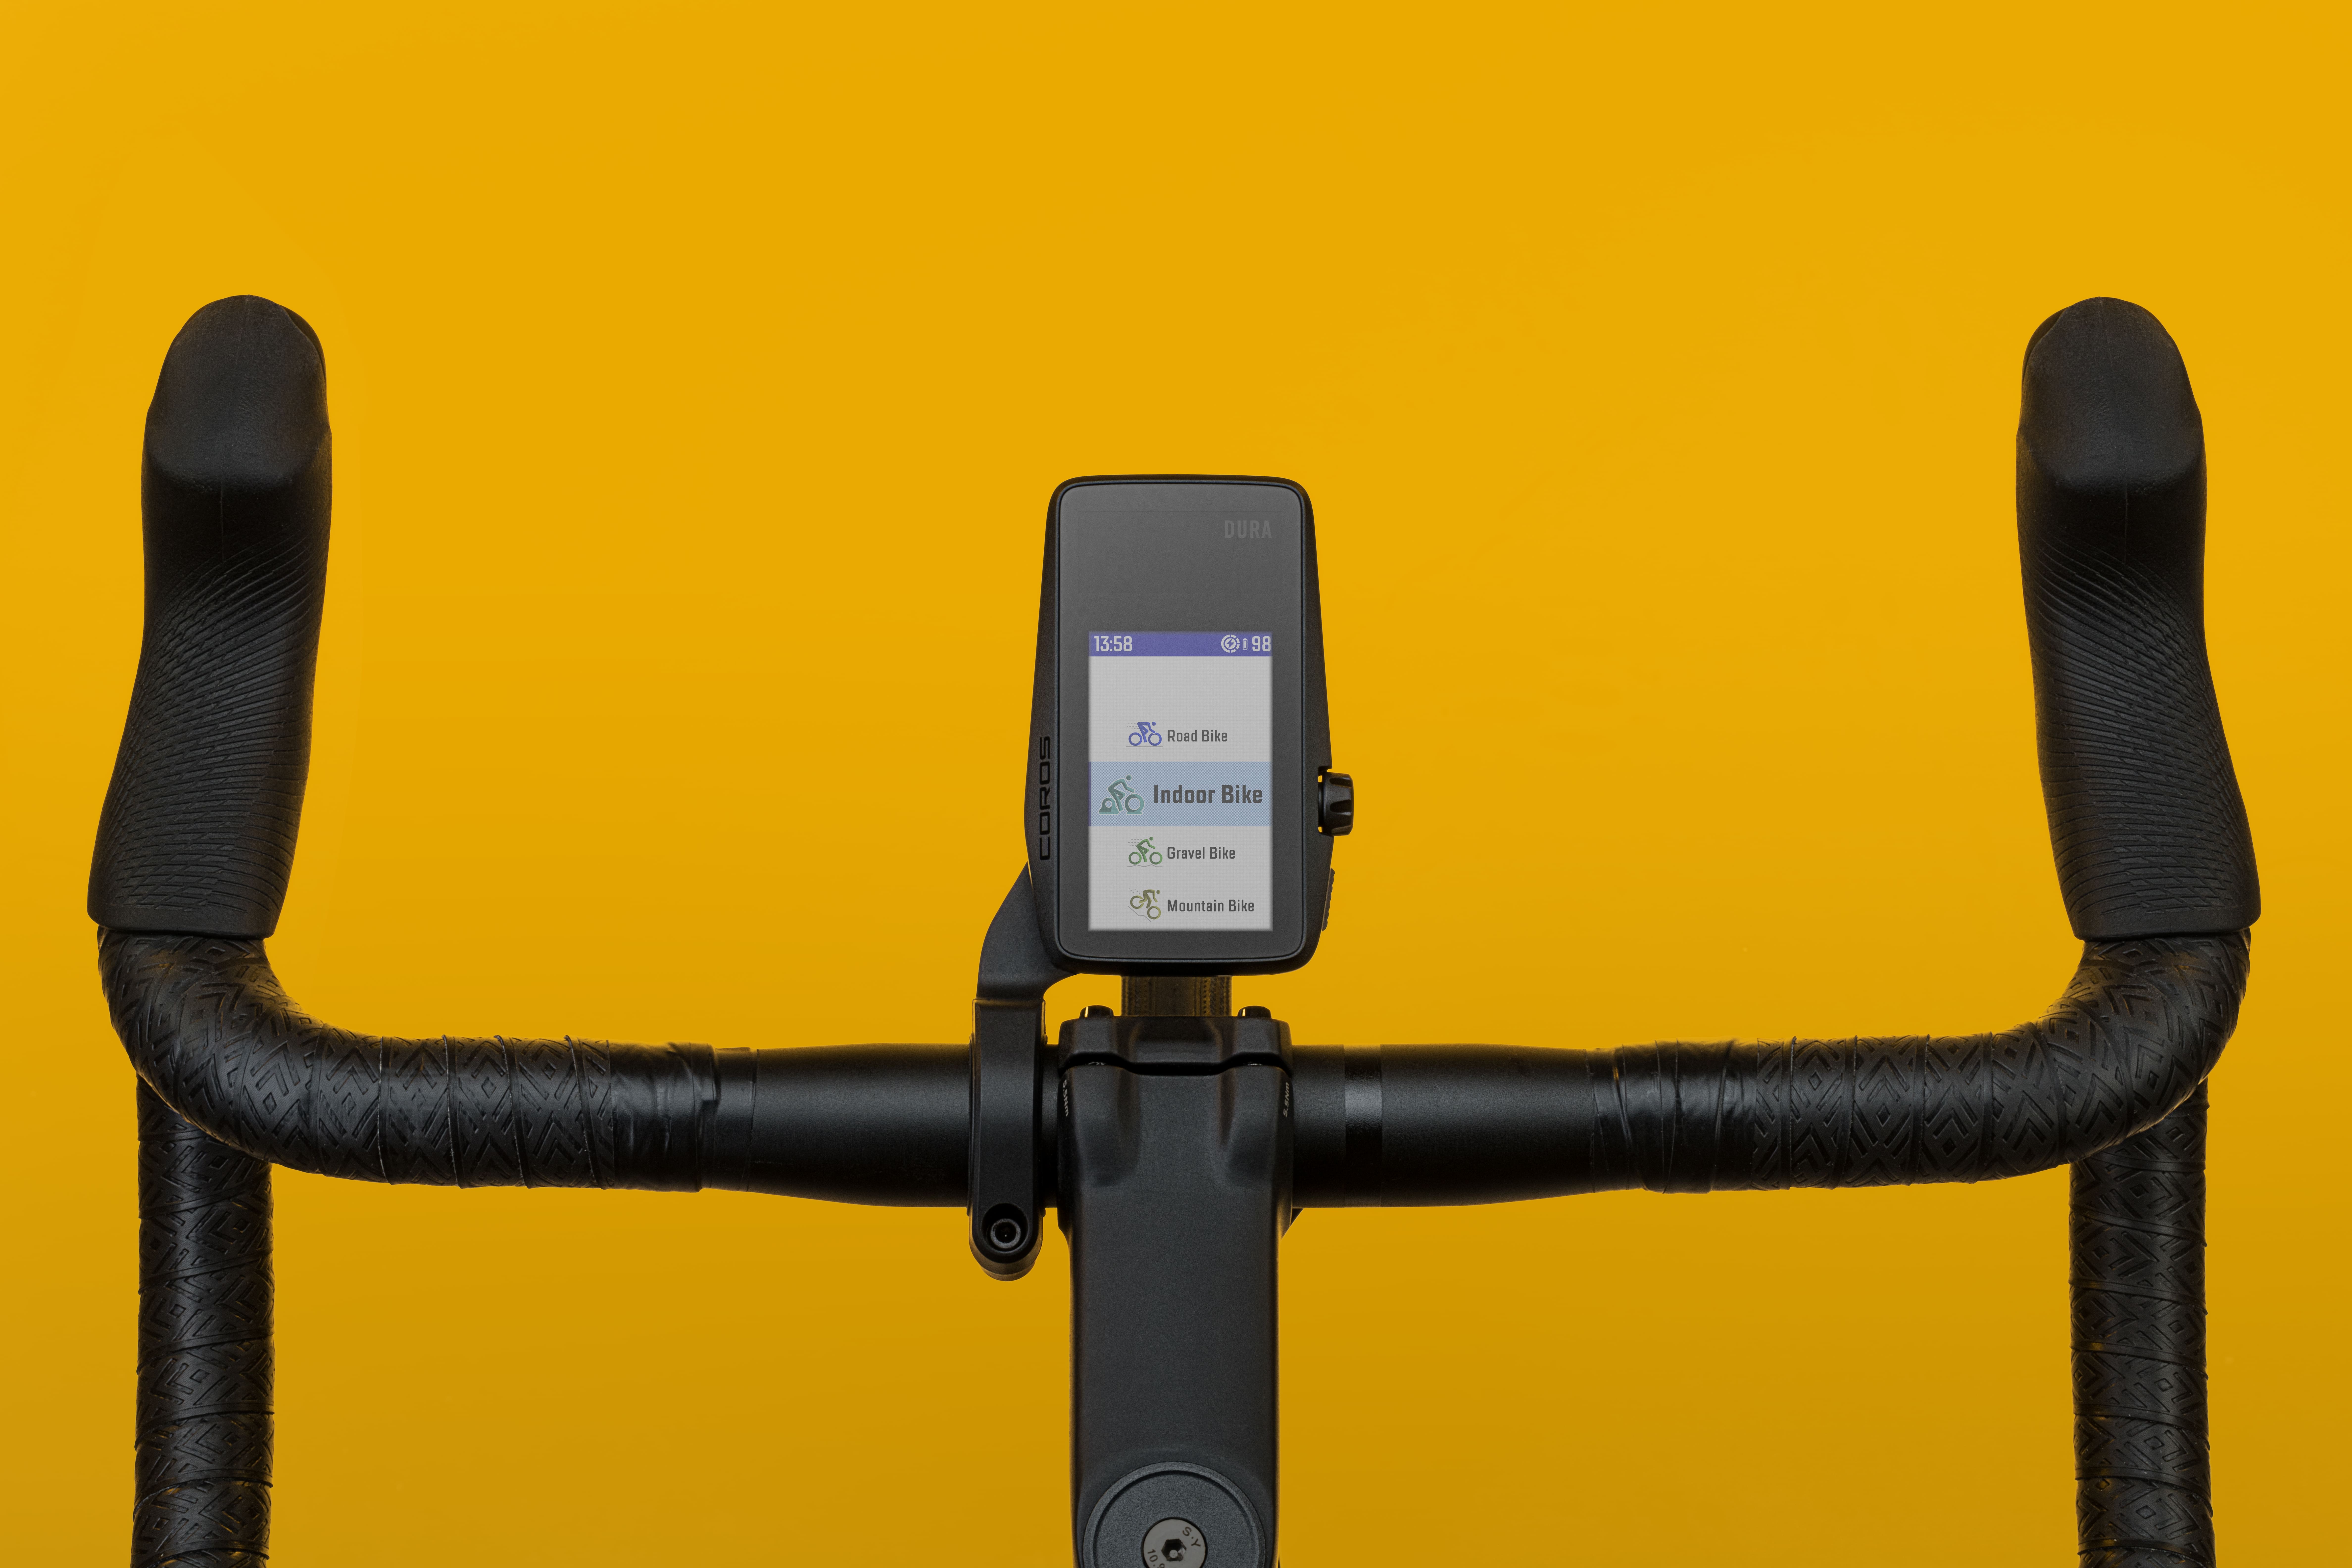 COROS社はサイクリング体験をより楽しむというビジョンのもと、GPSサイクルコンピューター市場に新規参入のサブ画像3